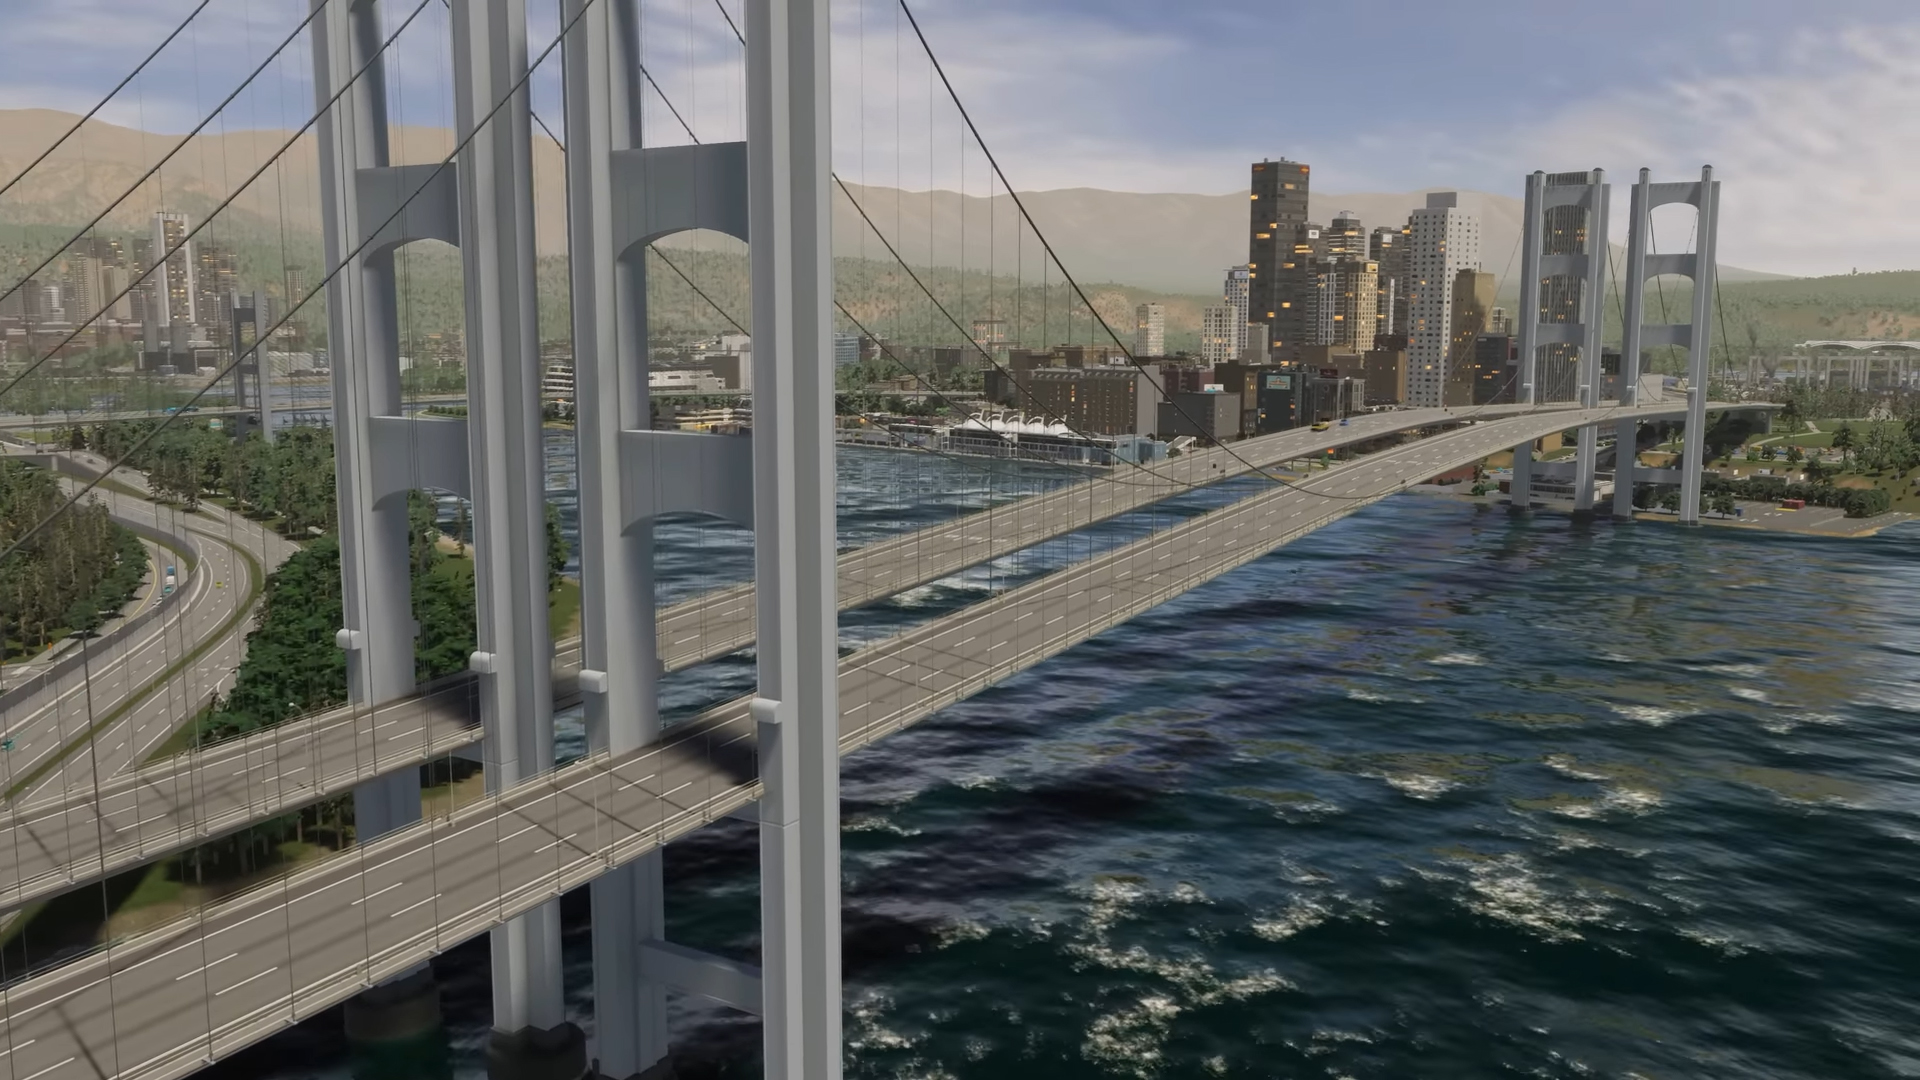 Şehirler: Skylines 2'nin harika yeni yol araçları, şimdiden şehrimin trafik dolu bir cehennem olmayacağını düşünmeme neden oluyor